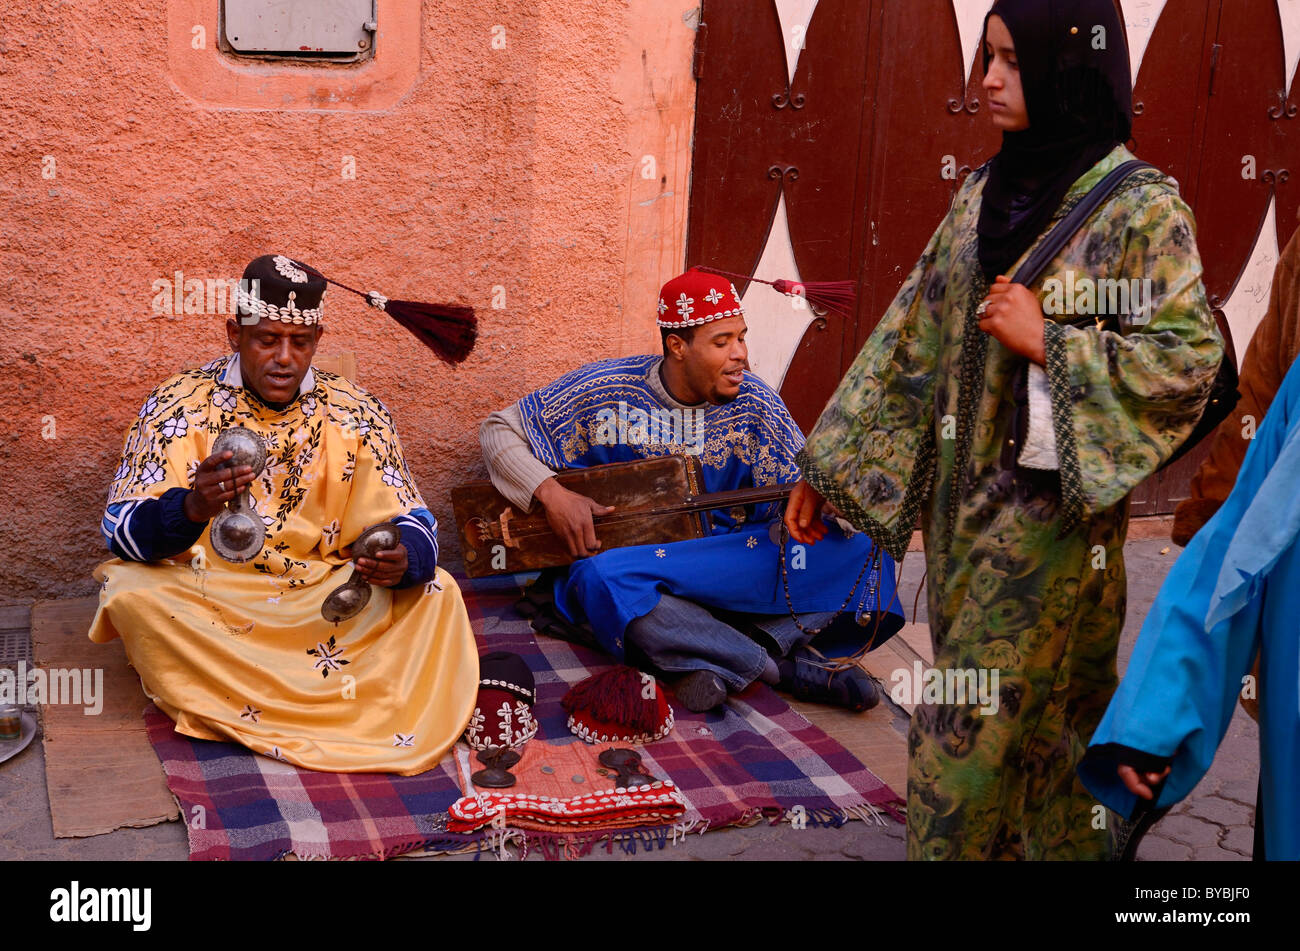 Les musiciens Gnawa heureux à Marrakech balançant leur tarboosh glands en rythme avec la musique et les femmes les passants Maroc Banque D'Images